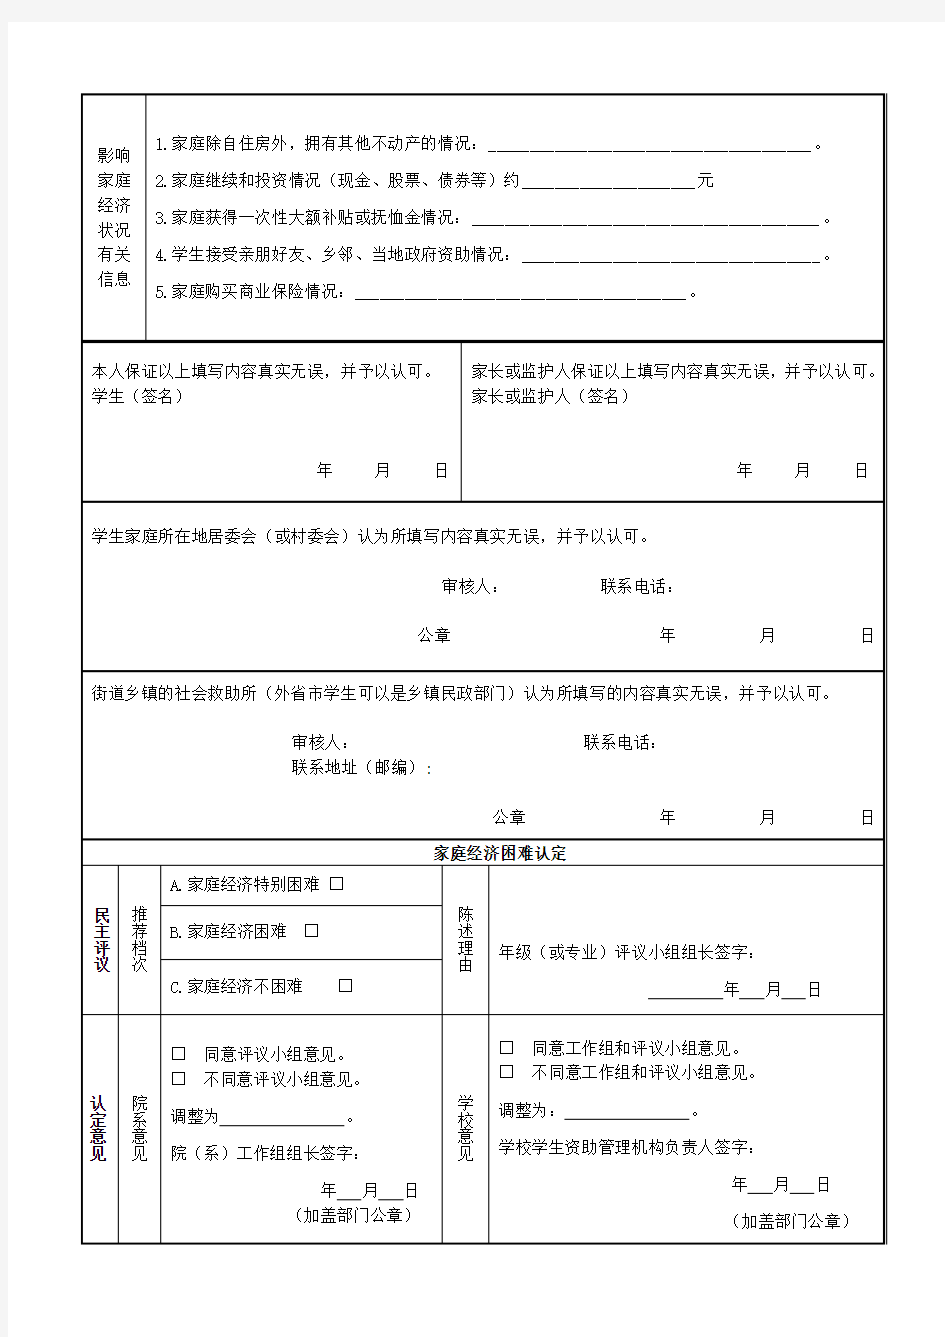 2010版上海市家庭经济困难学生贫困认定申请表